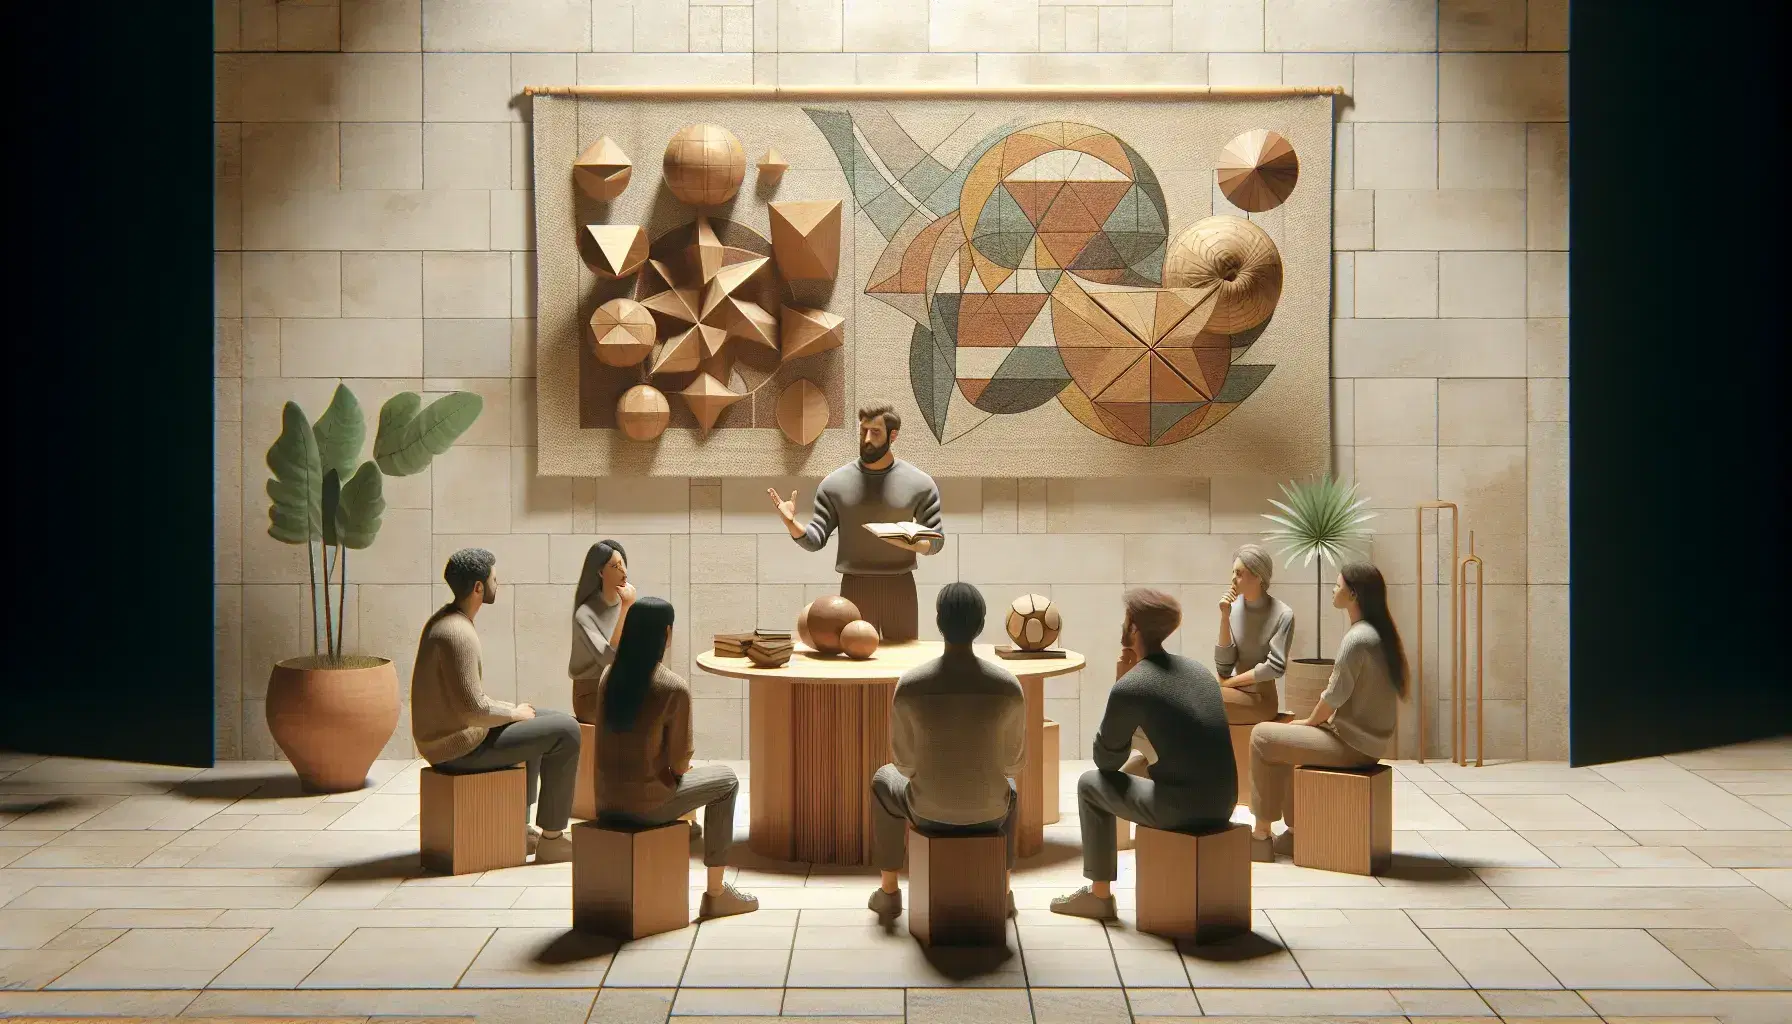 Grupo de cinco personas en semicírculo alrededor de un líder de pie que gesticula, con figuras geométricas de madera en una mesa y tapiz geométrico en la pared.